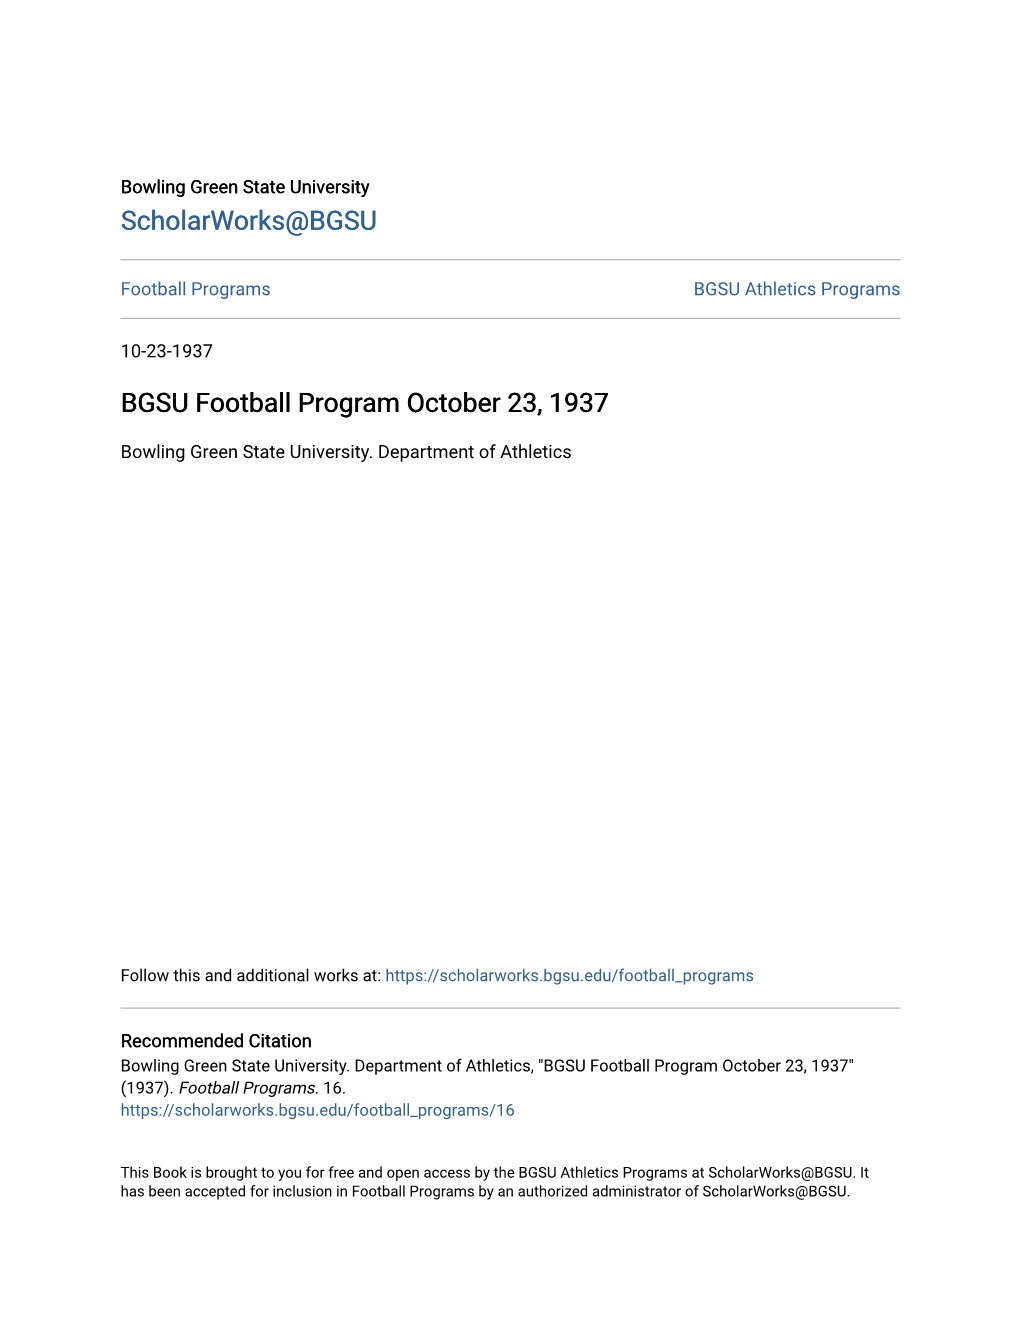 BGSU Football Program October 23, 1937